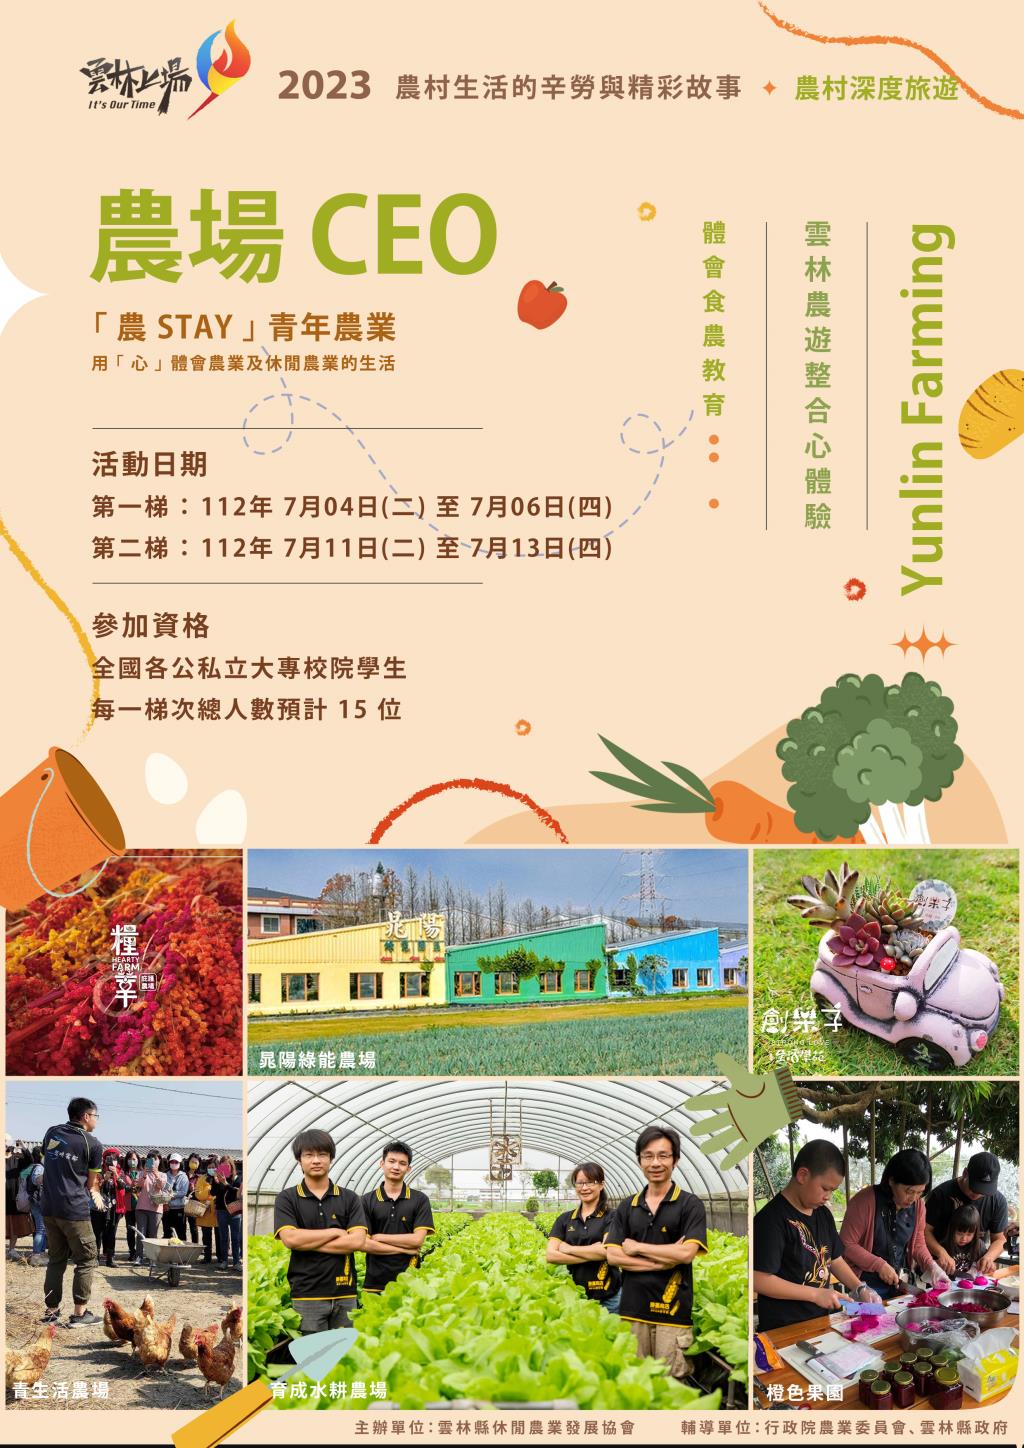  【轉知】農場 CEO - 雲林縣休閒農業發展協會